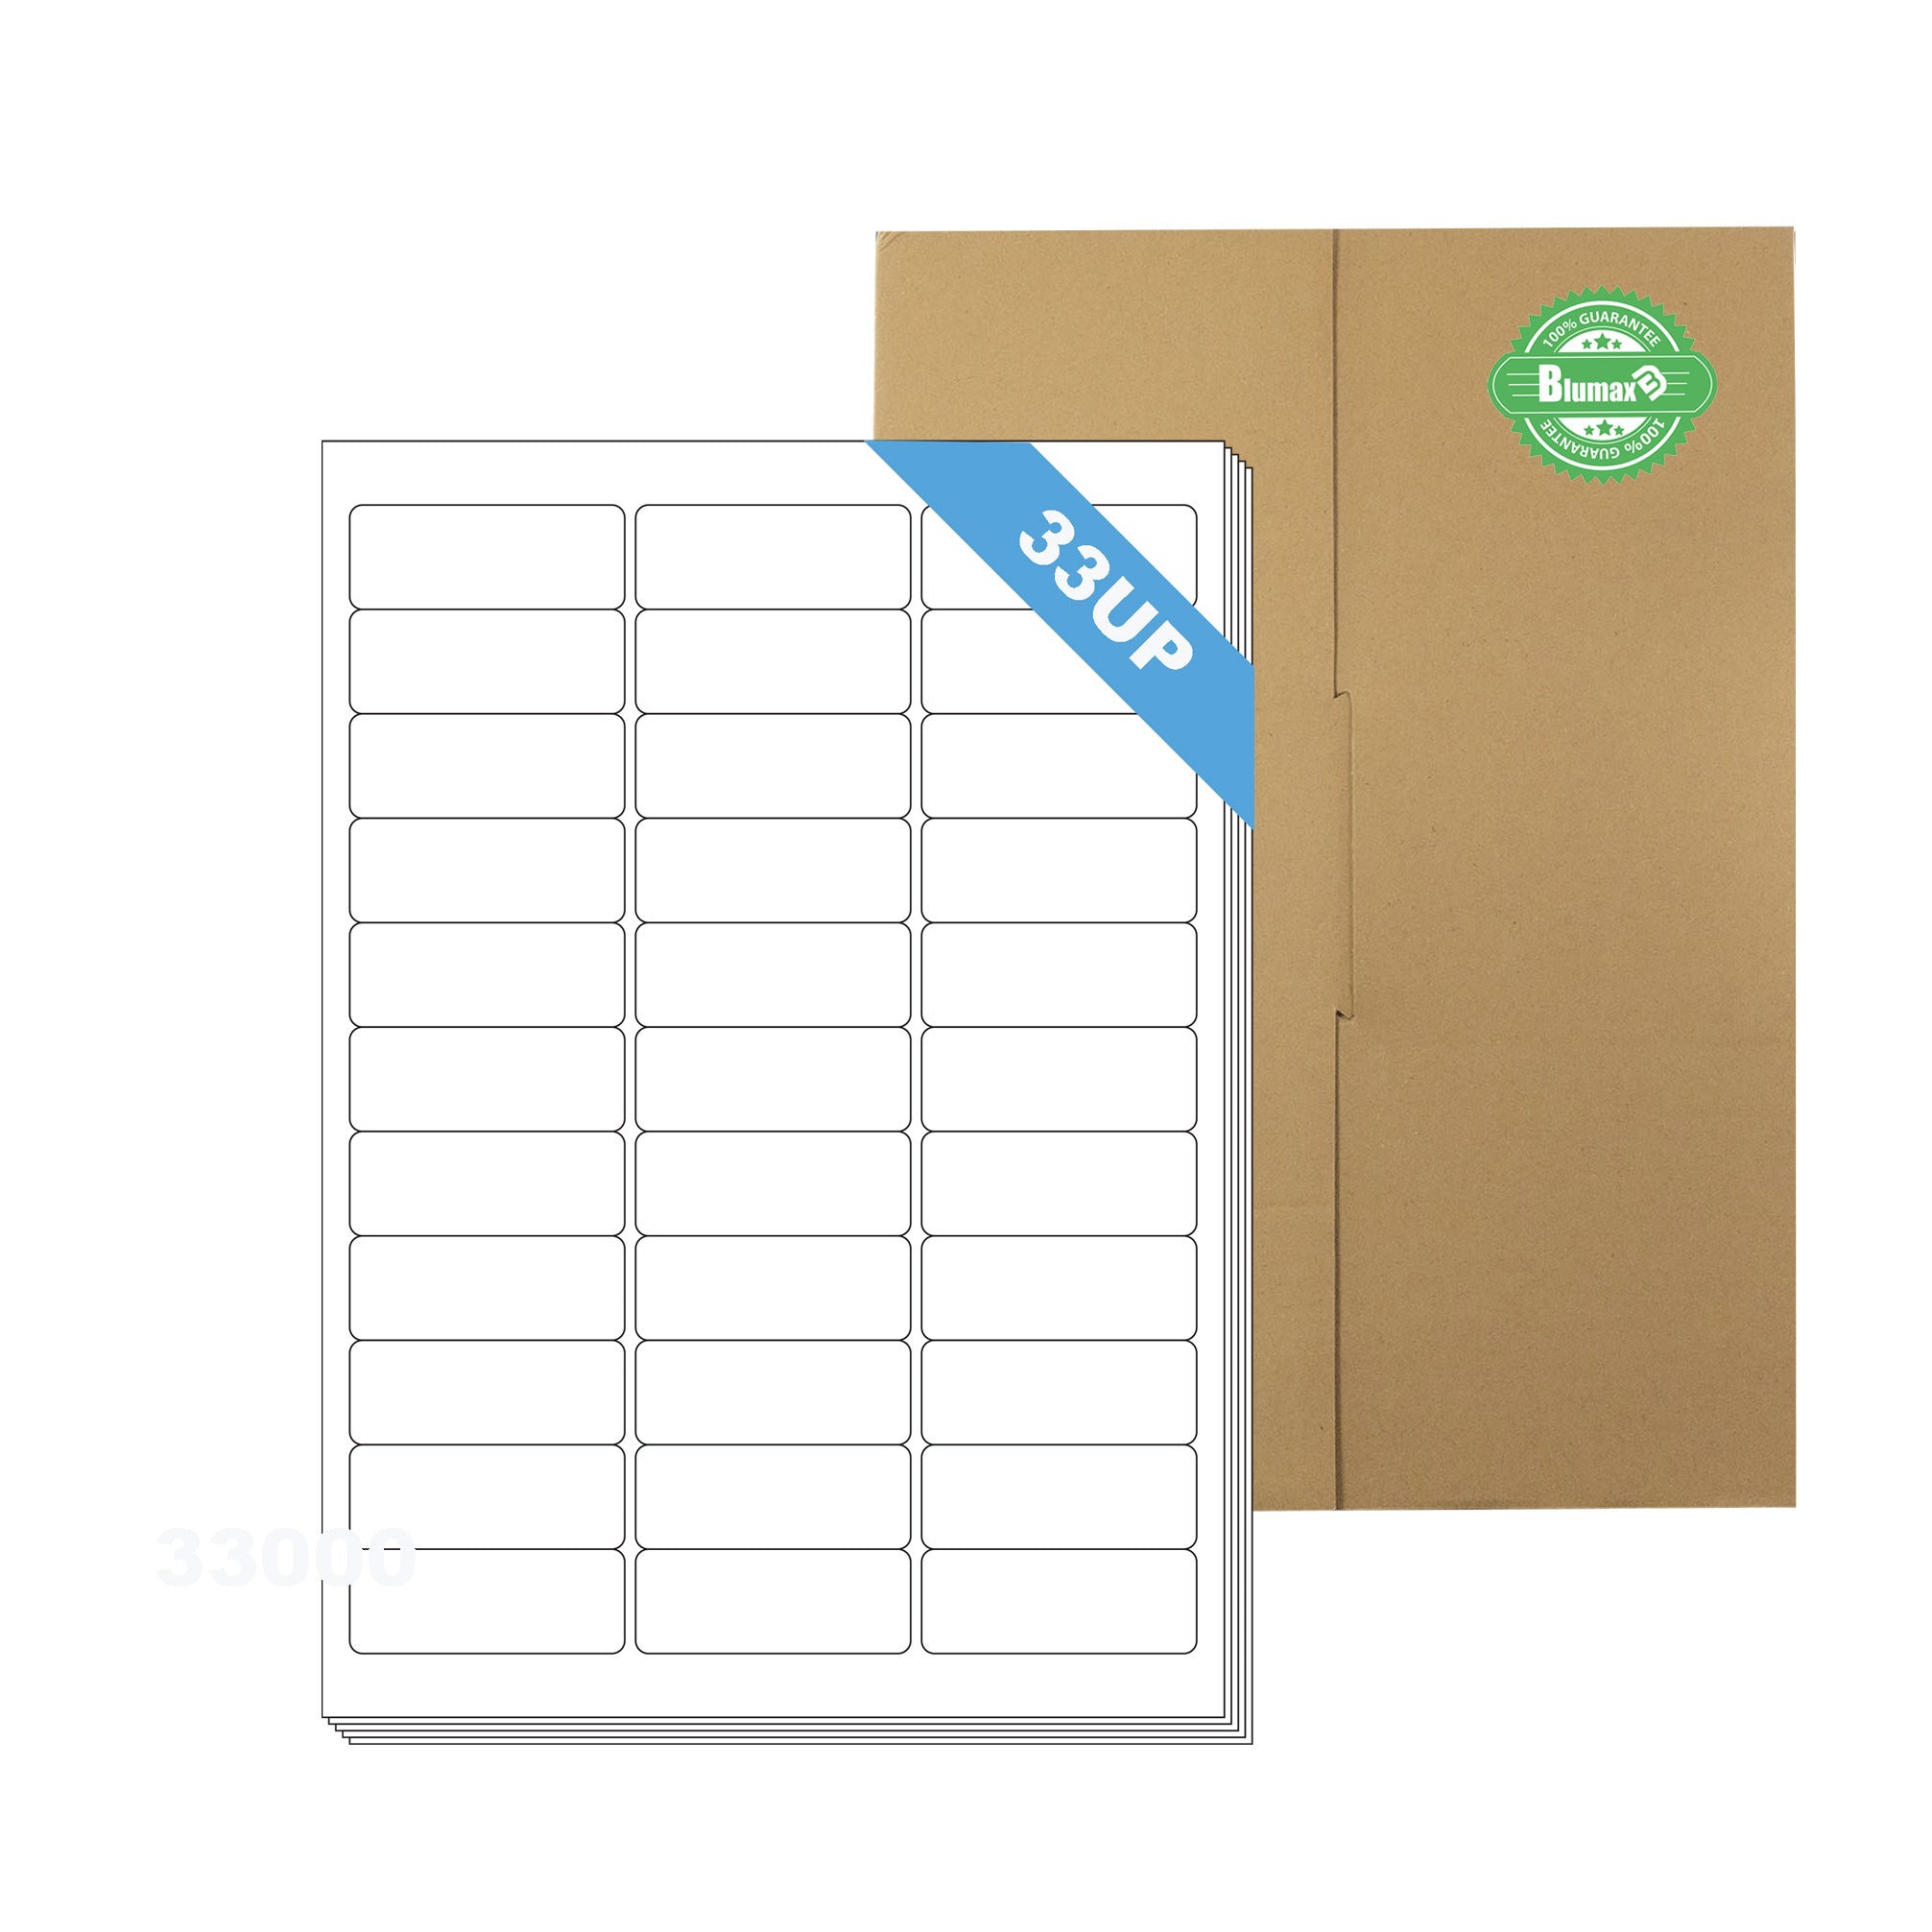 A4 Format Rectangle Labels 64 x 24.3mm 33 Labels Per Sheet/ 1000 Sheets